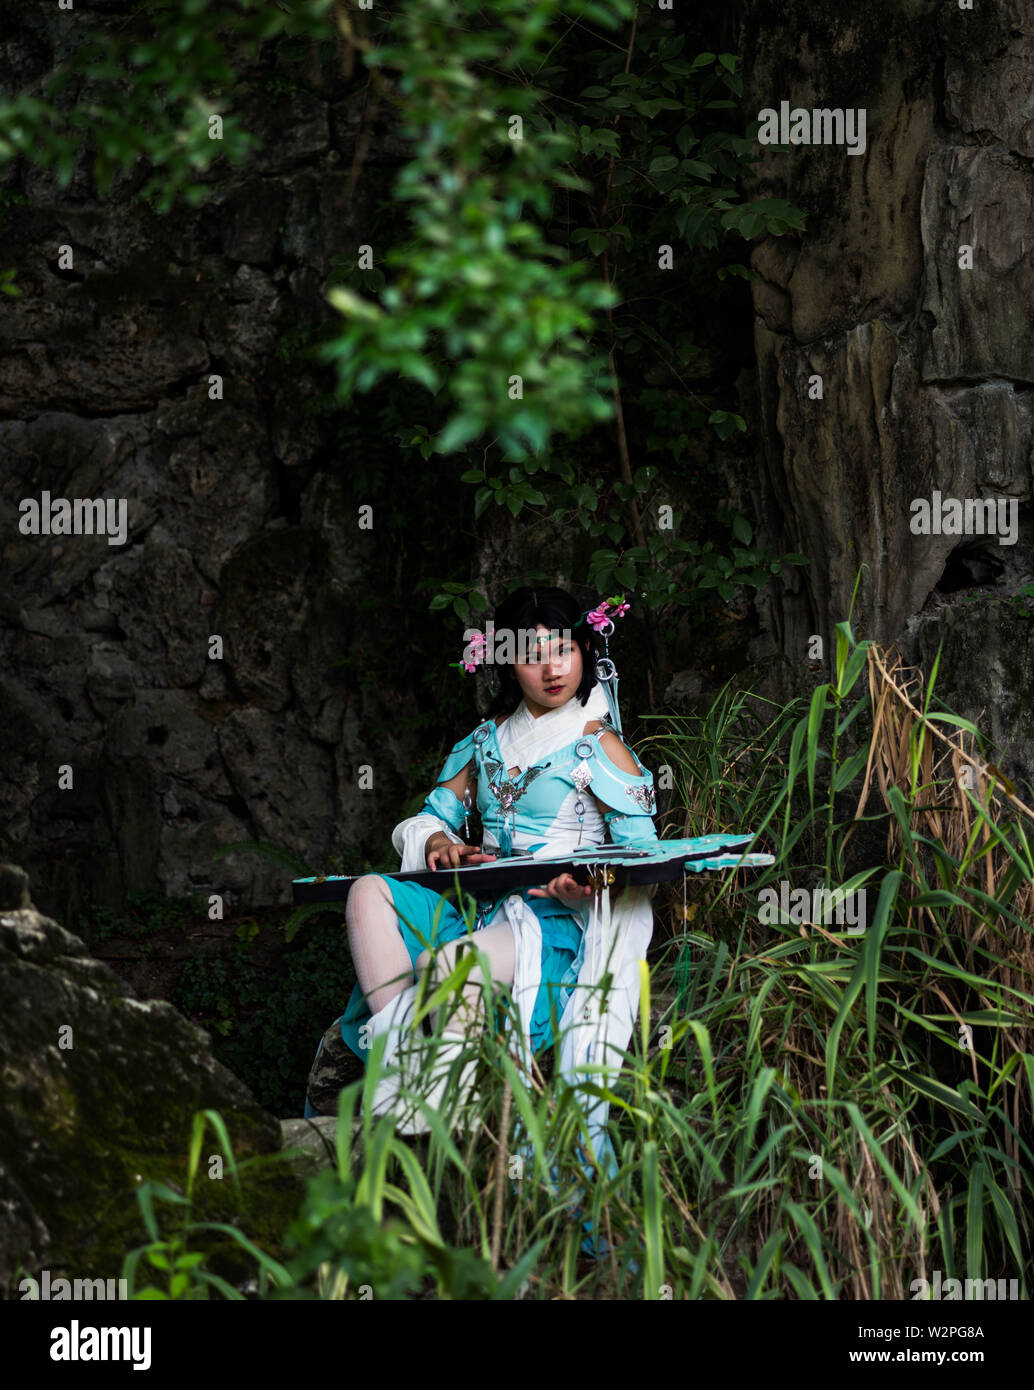 Juli 10, 2019 - Sichuan, Sichuan, China - Sichuan, China - 10 Juli 2019: Chengdu Menschen Park hat sich zu einem beliebten Ort für junge Leute geworden, Fotos zu machen. (Bild: © SIPA Asien über ZUMA Draht) Stockfoto